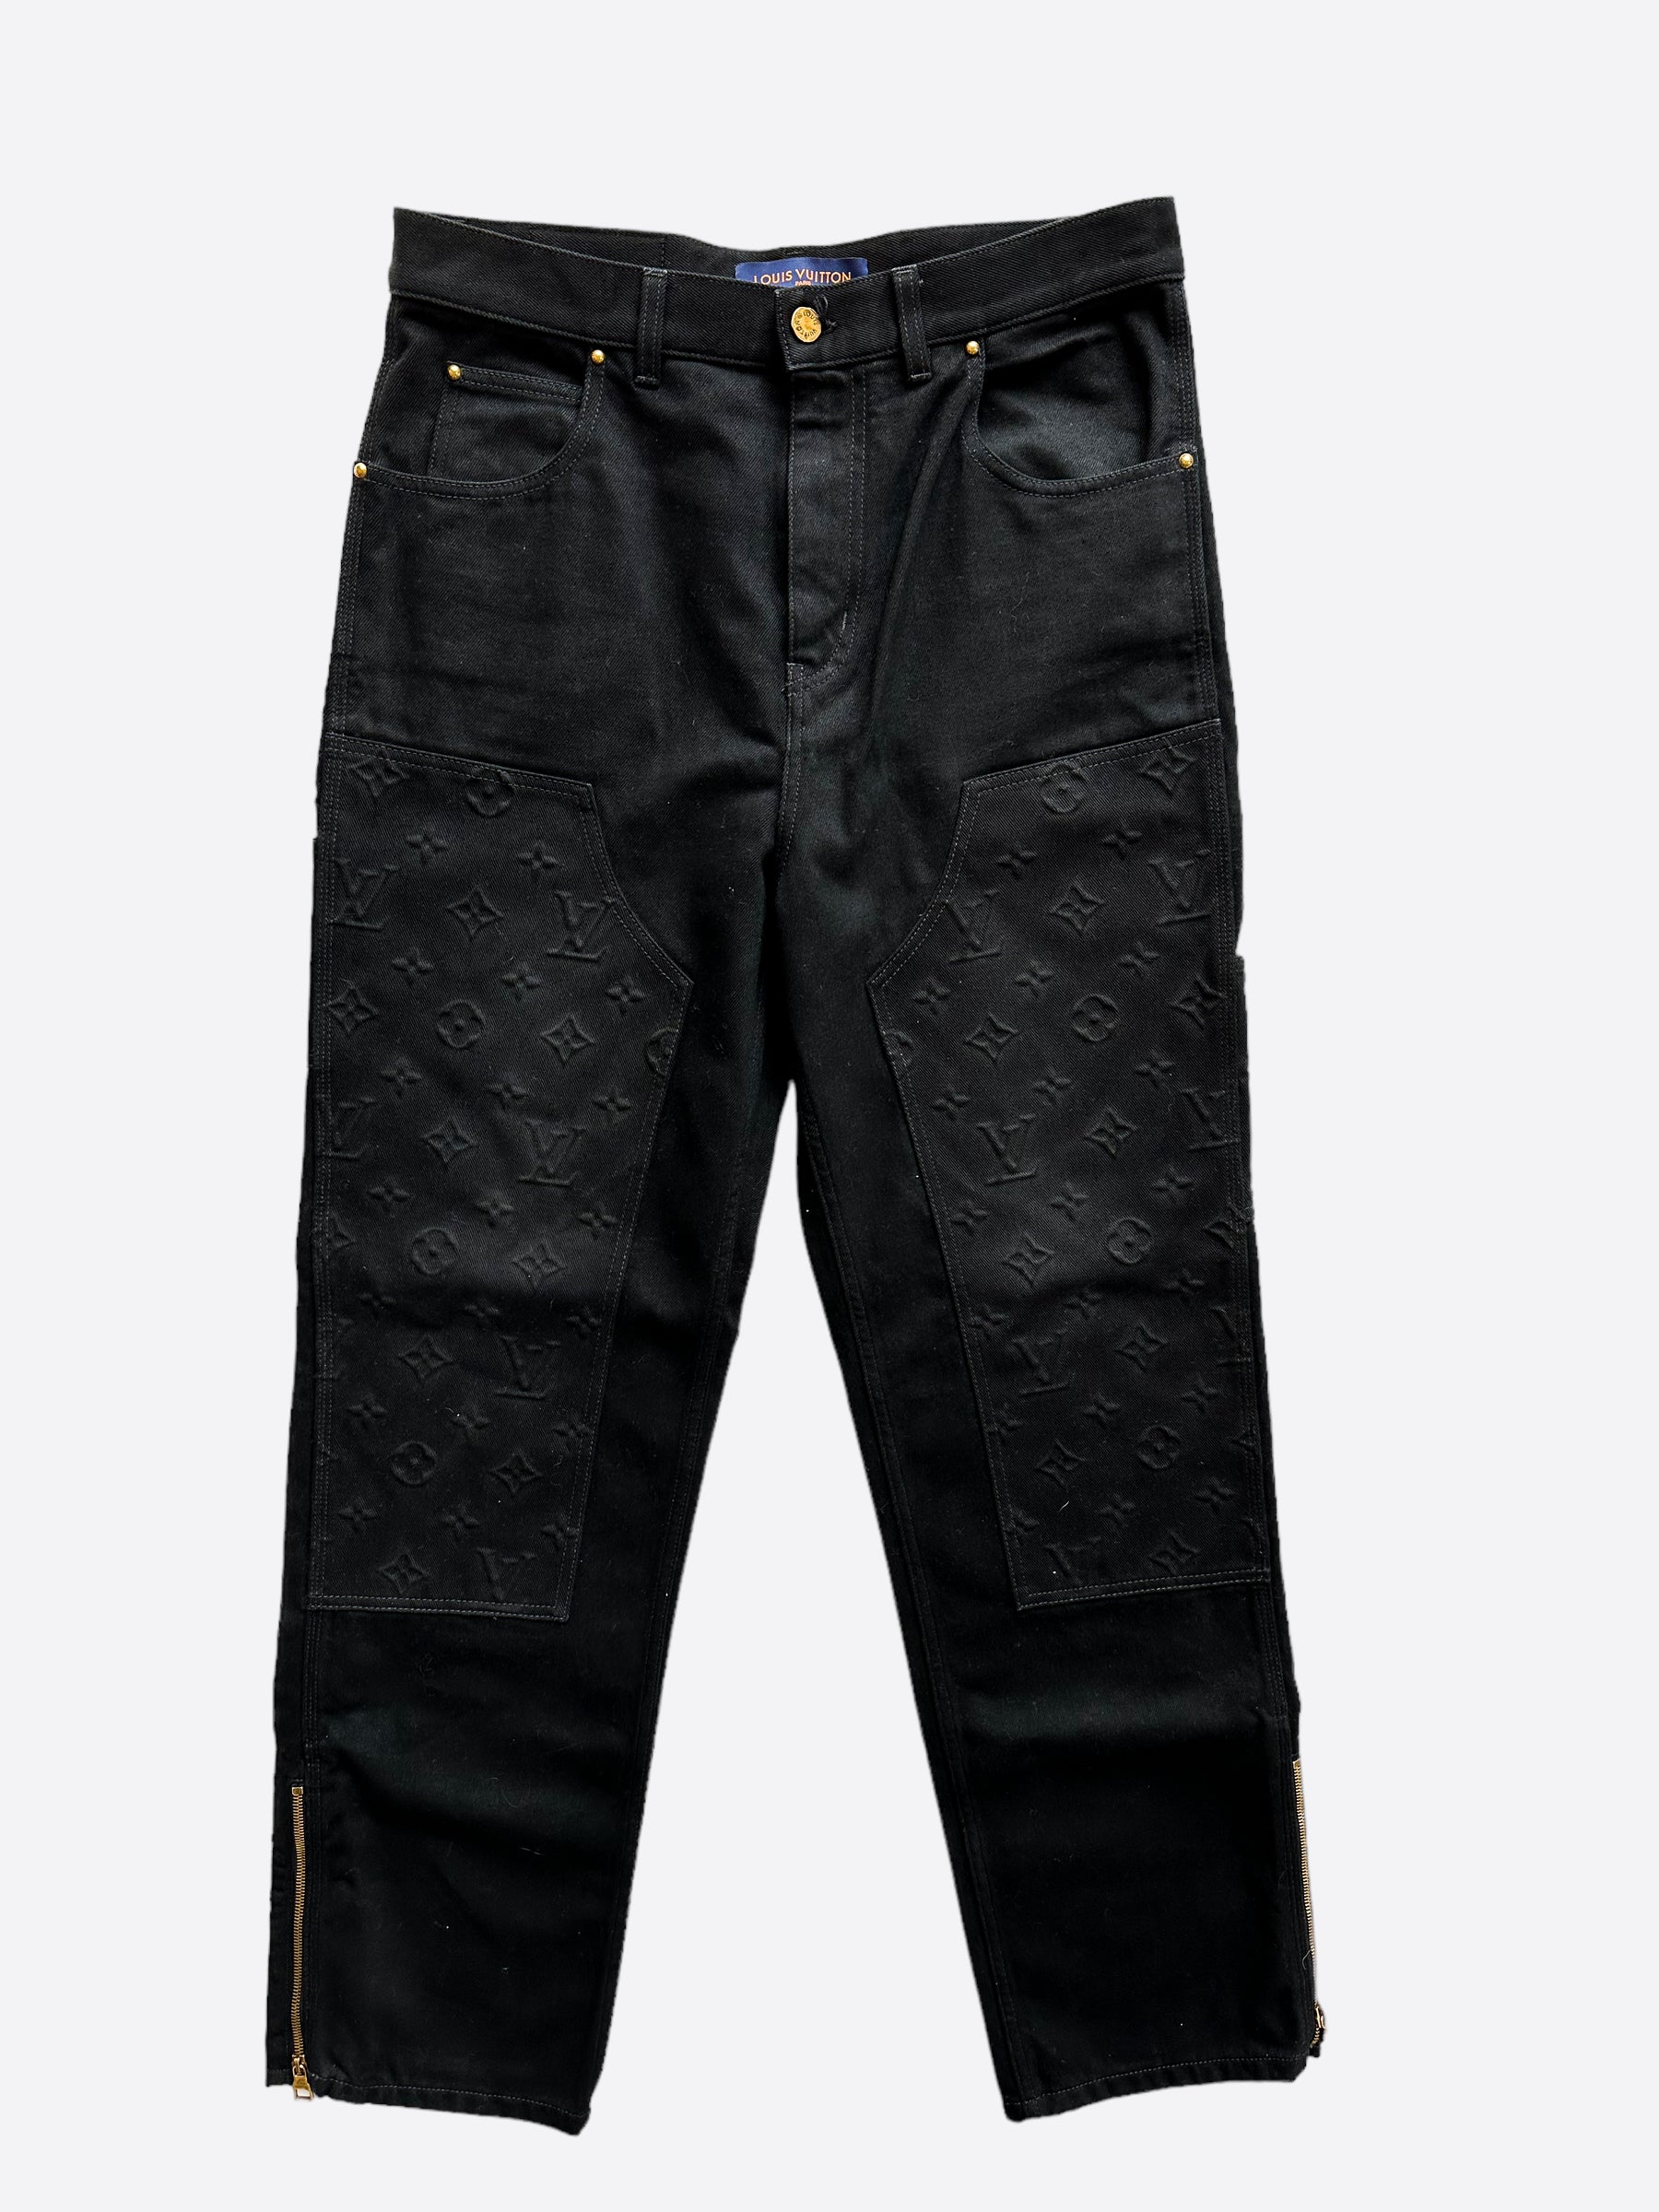 Louis Vuitton, Jeans, Louis Vuitton Monogram Patch Denim Jeans Size 6